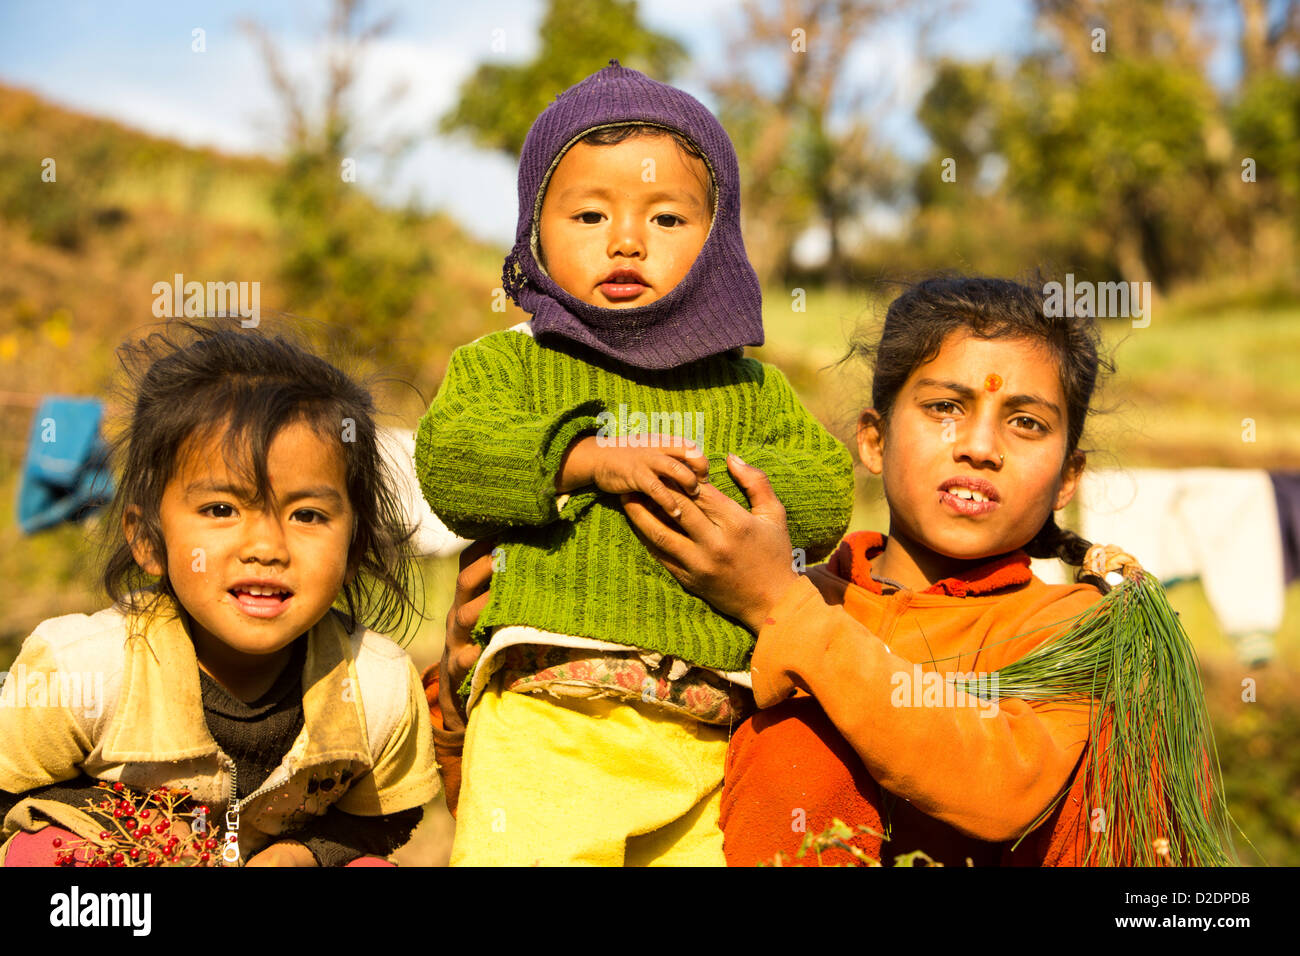 Bambini nepalesi in abbigliamento tradizionale nei foothills dell'Himalaya, Nepal. Foto Stock